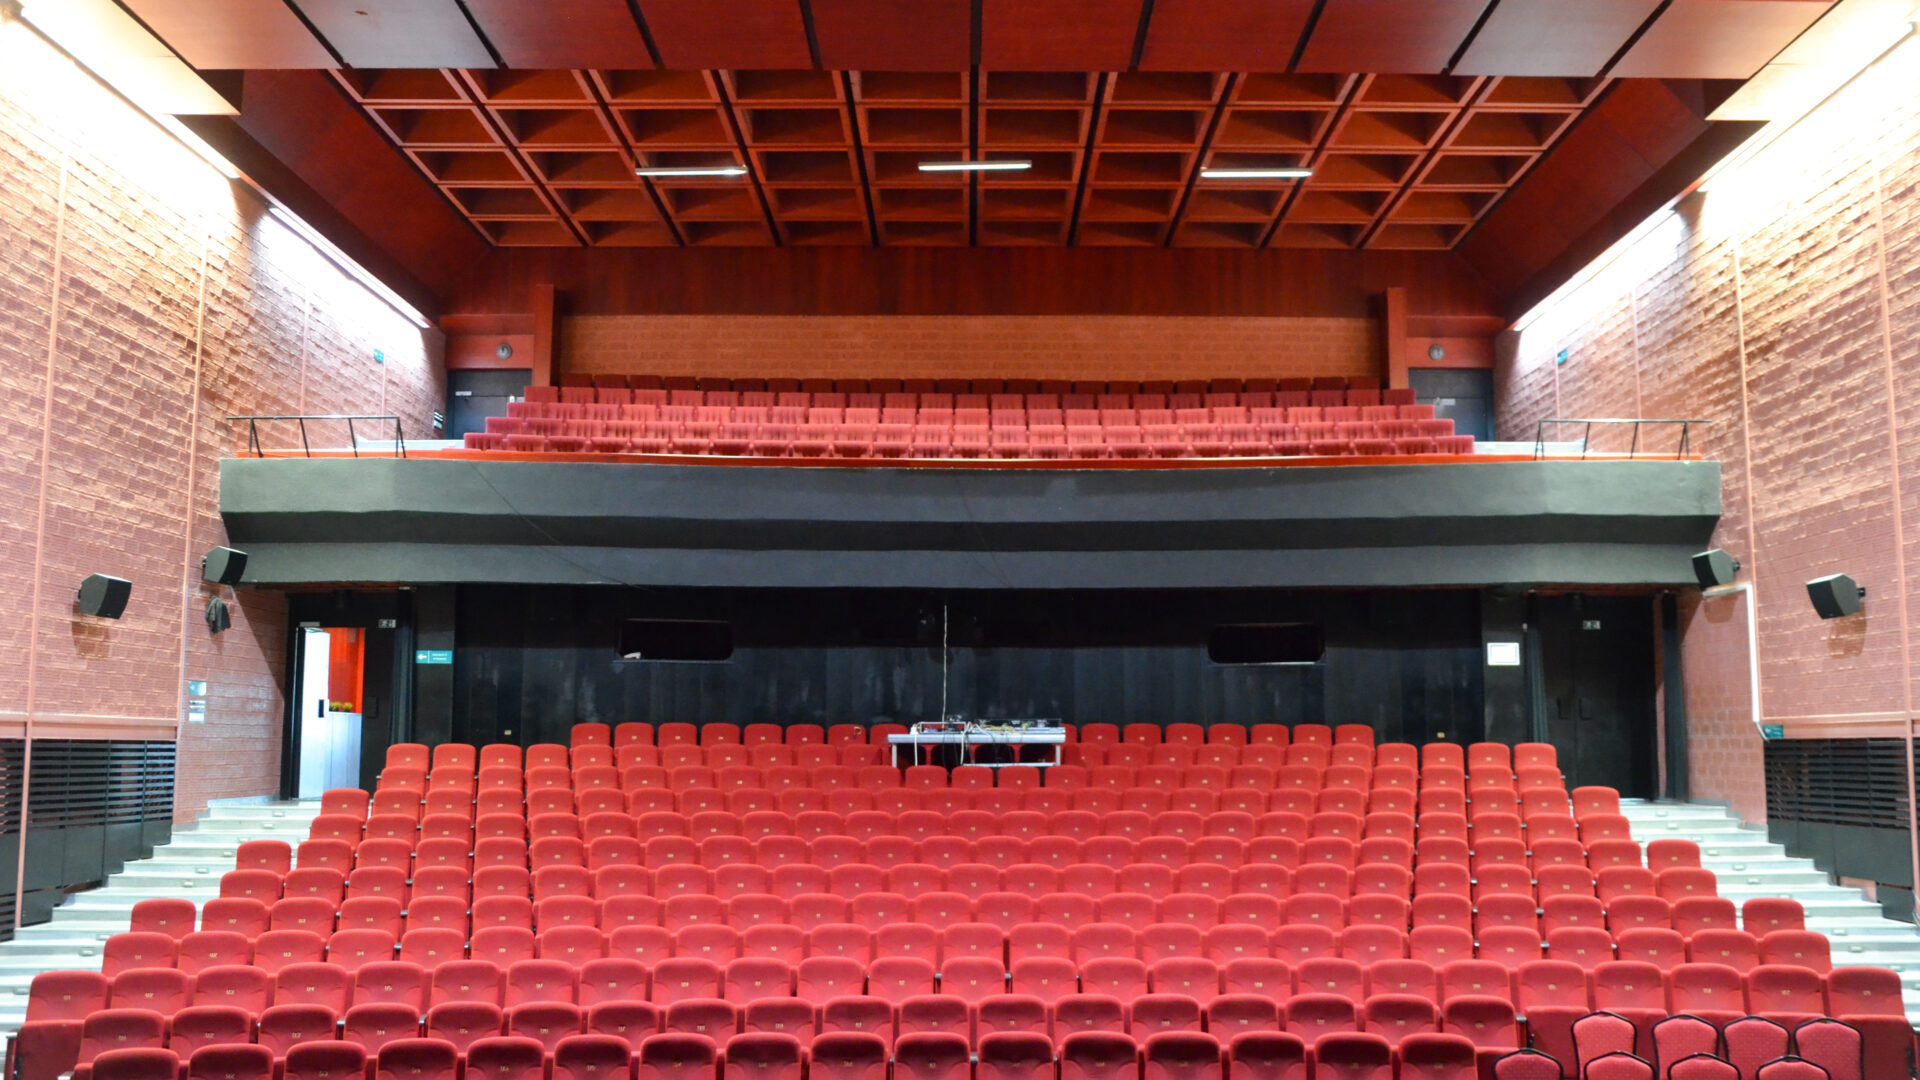 Kino-divadelná sála – rozsiahla červená farebnosť čalúnenia sedadiel vytvára silný výrazový kontrast k javisku a opone stvárnených v čiernej farbe